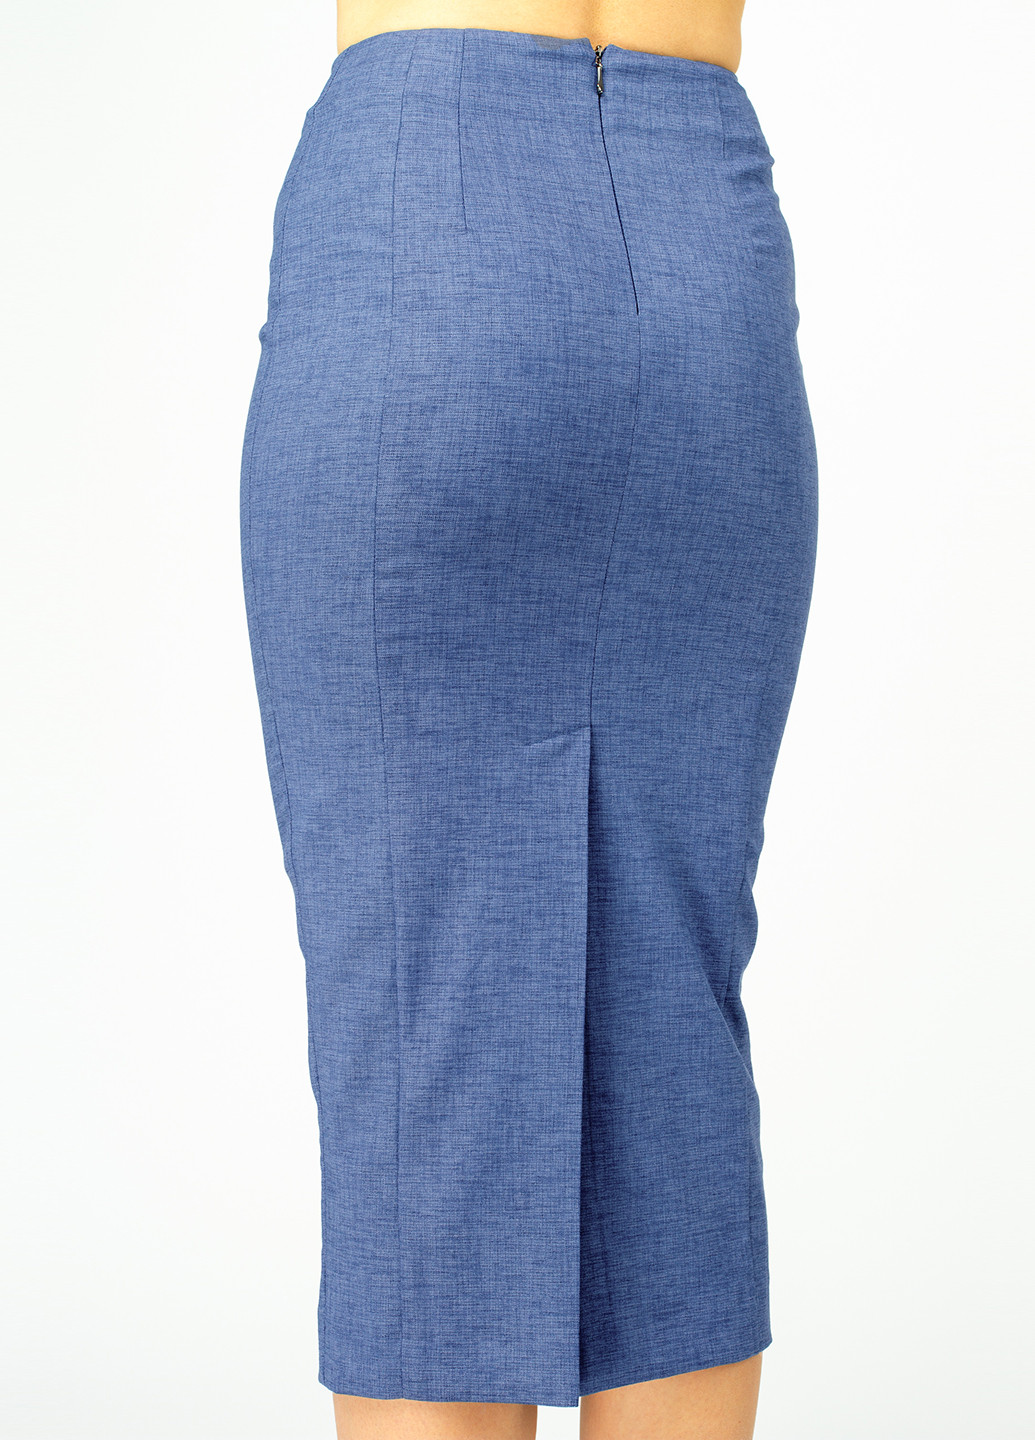 Костюм (жакет, юбка) BGL Комплект (жакет и юбка) юбочный меланж синий деловой вискоза